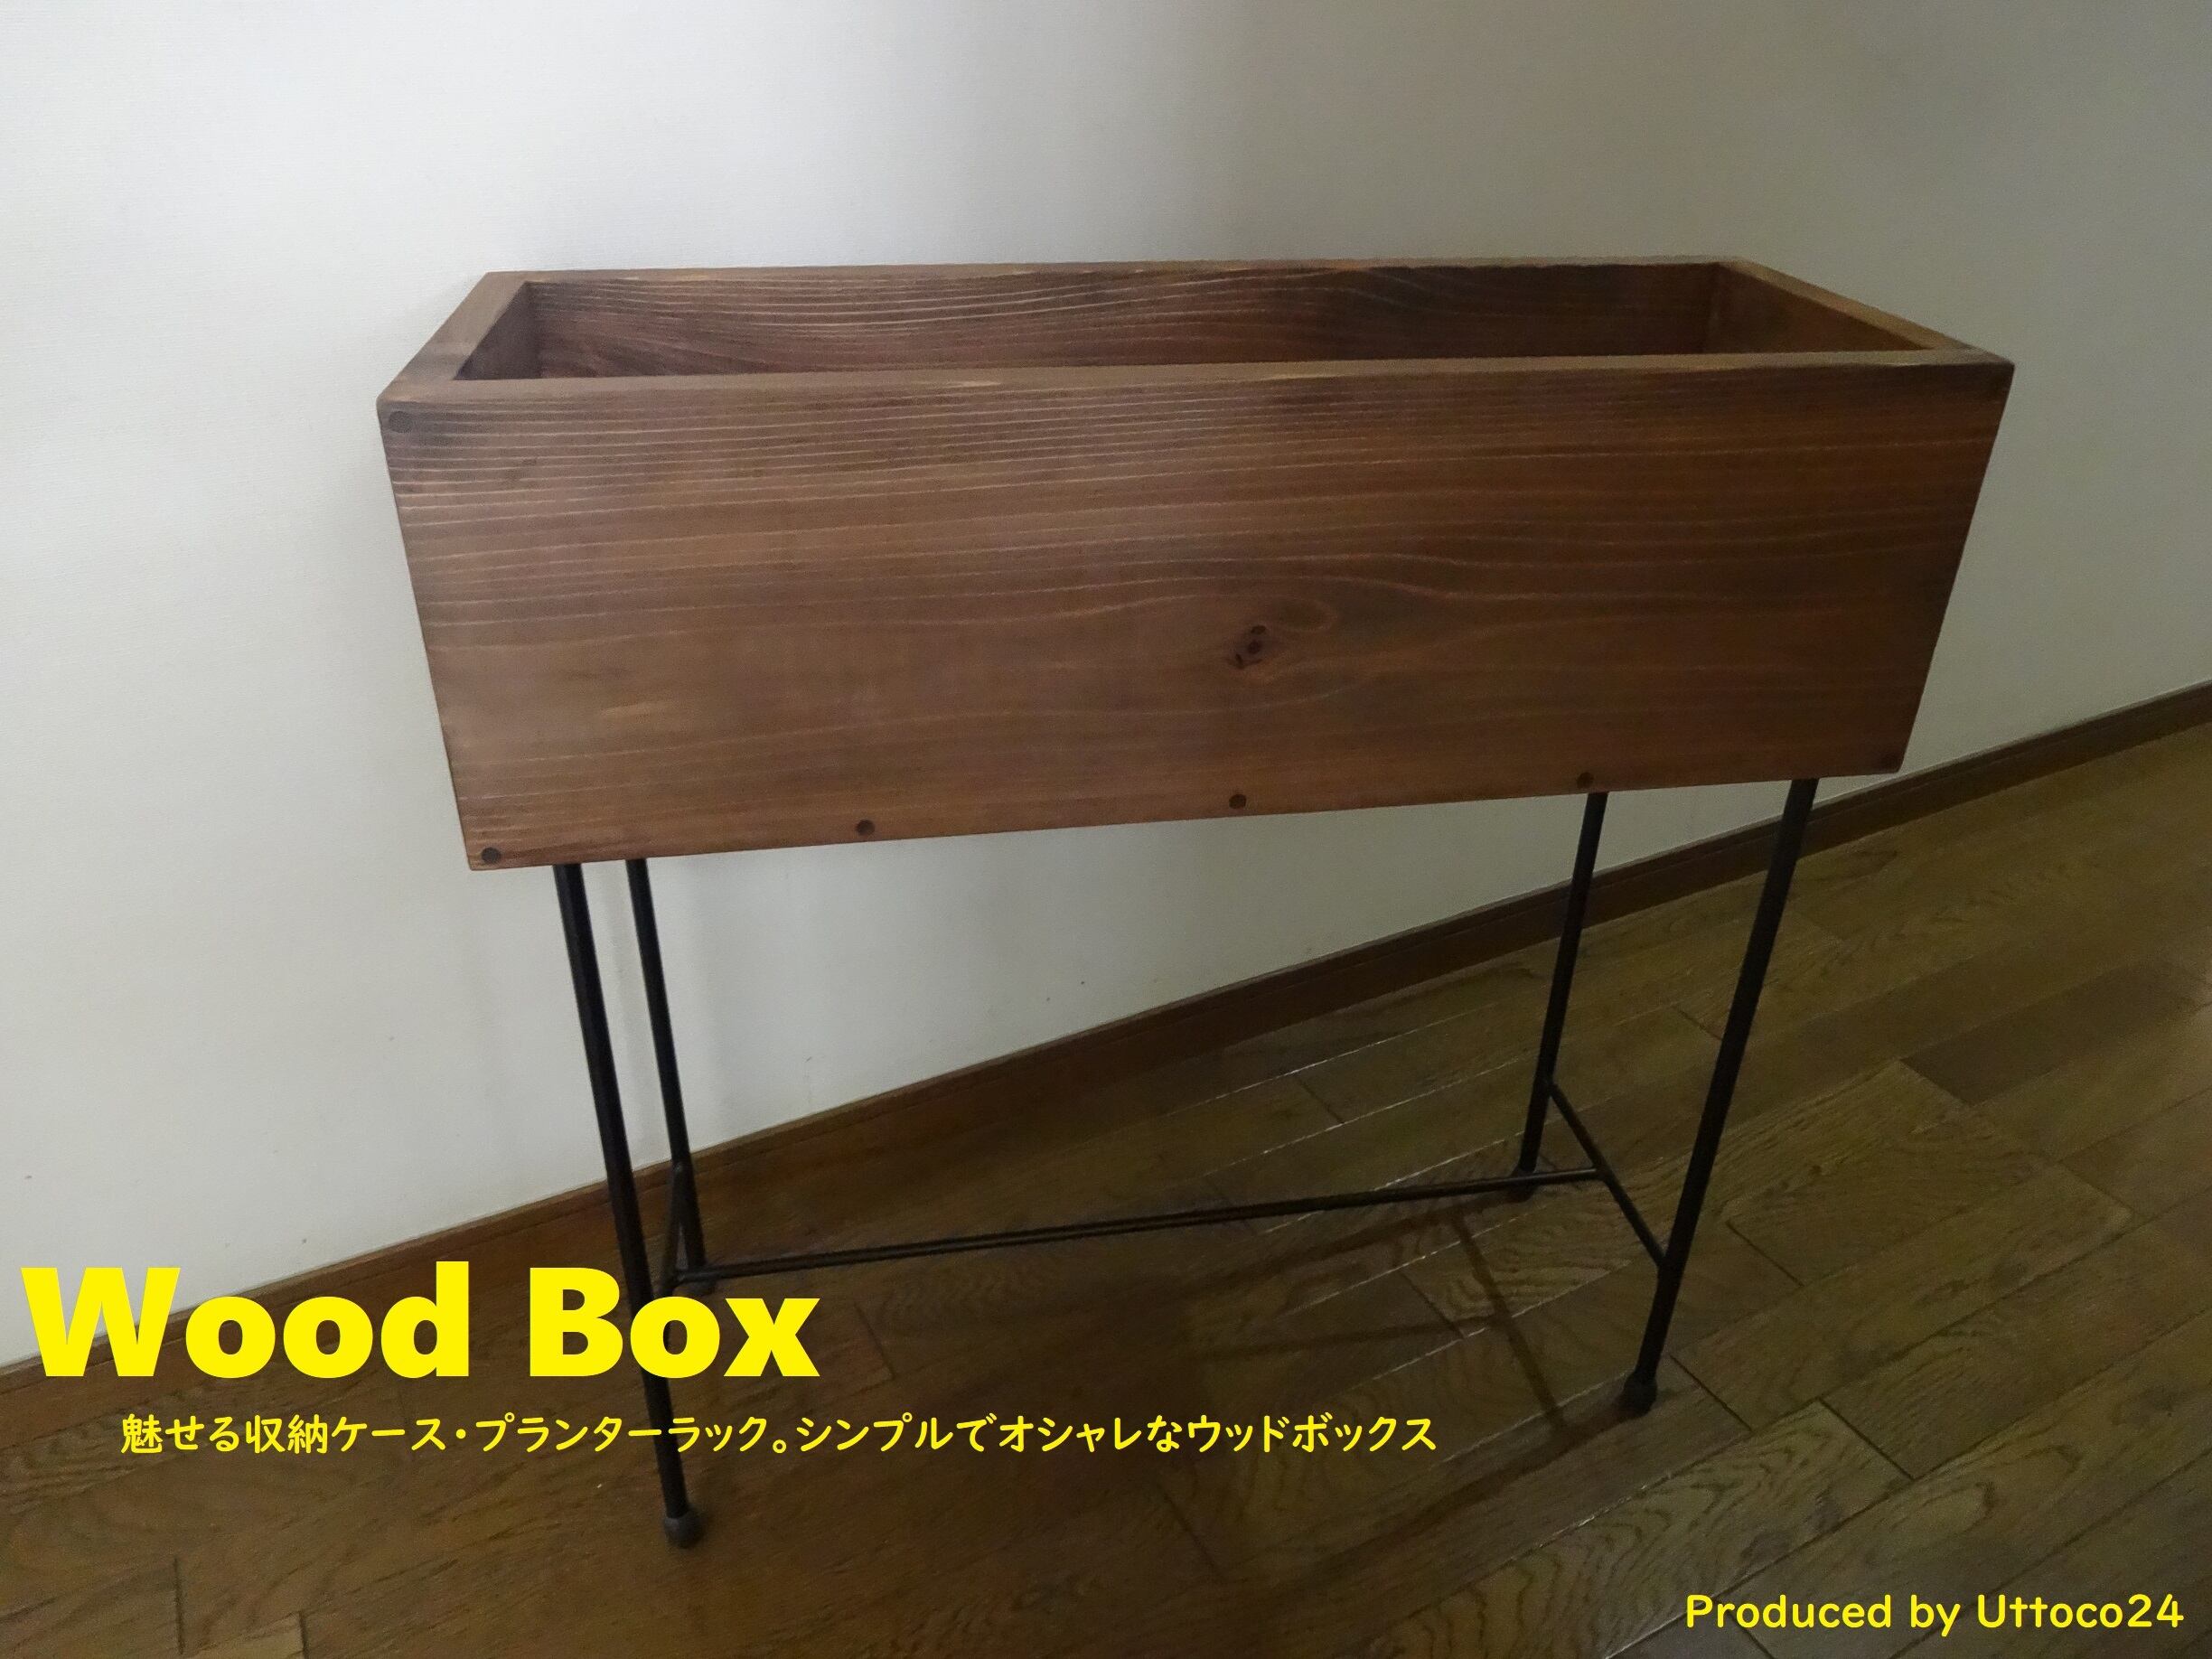 41 ウッドボックス / Wood Box Uttoco24 収納ボックス プランター